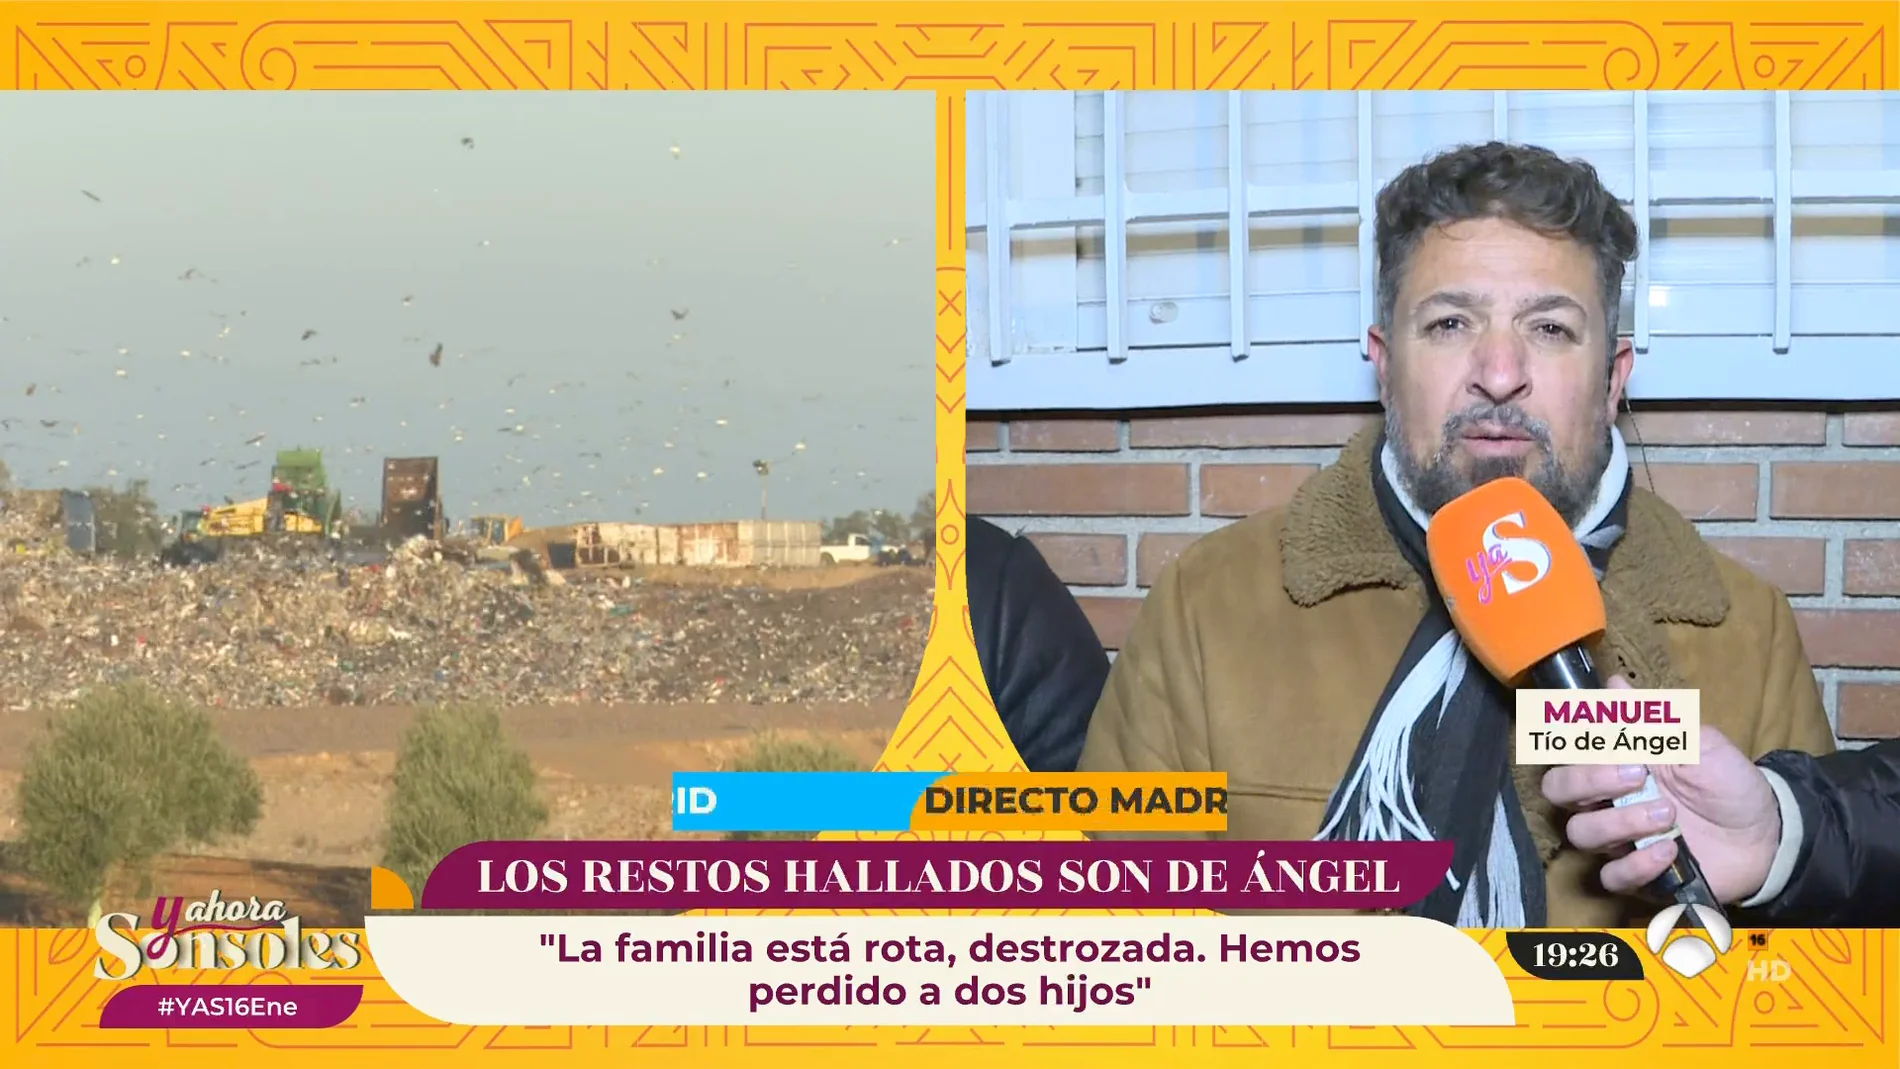 El tío de Ángel pide justicia por los menores: "La familia está destrozada, se les ha acabado la alegría de su casa"